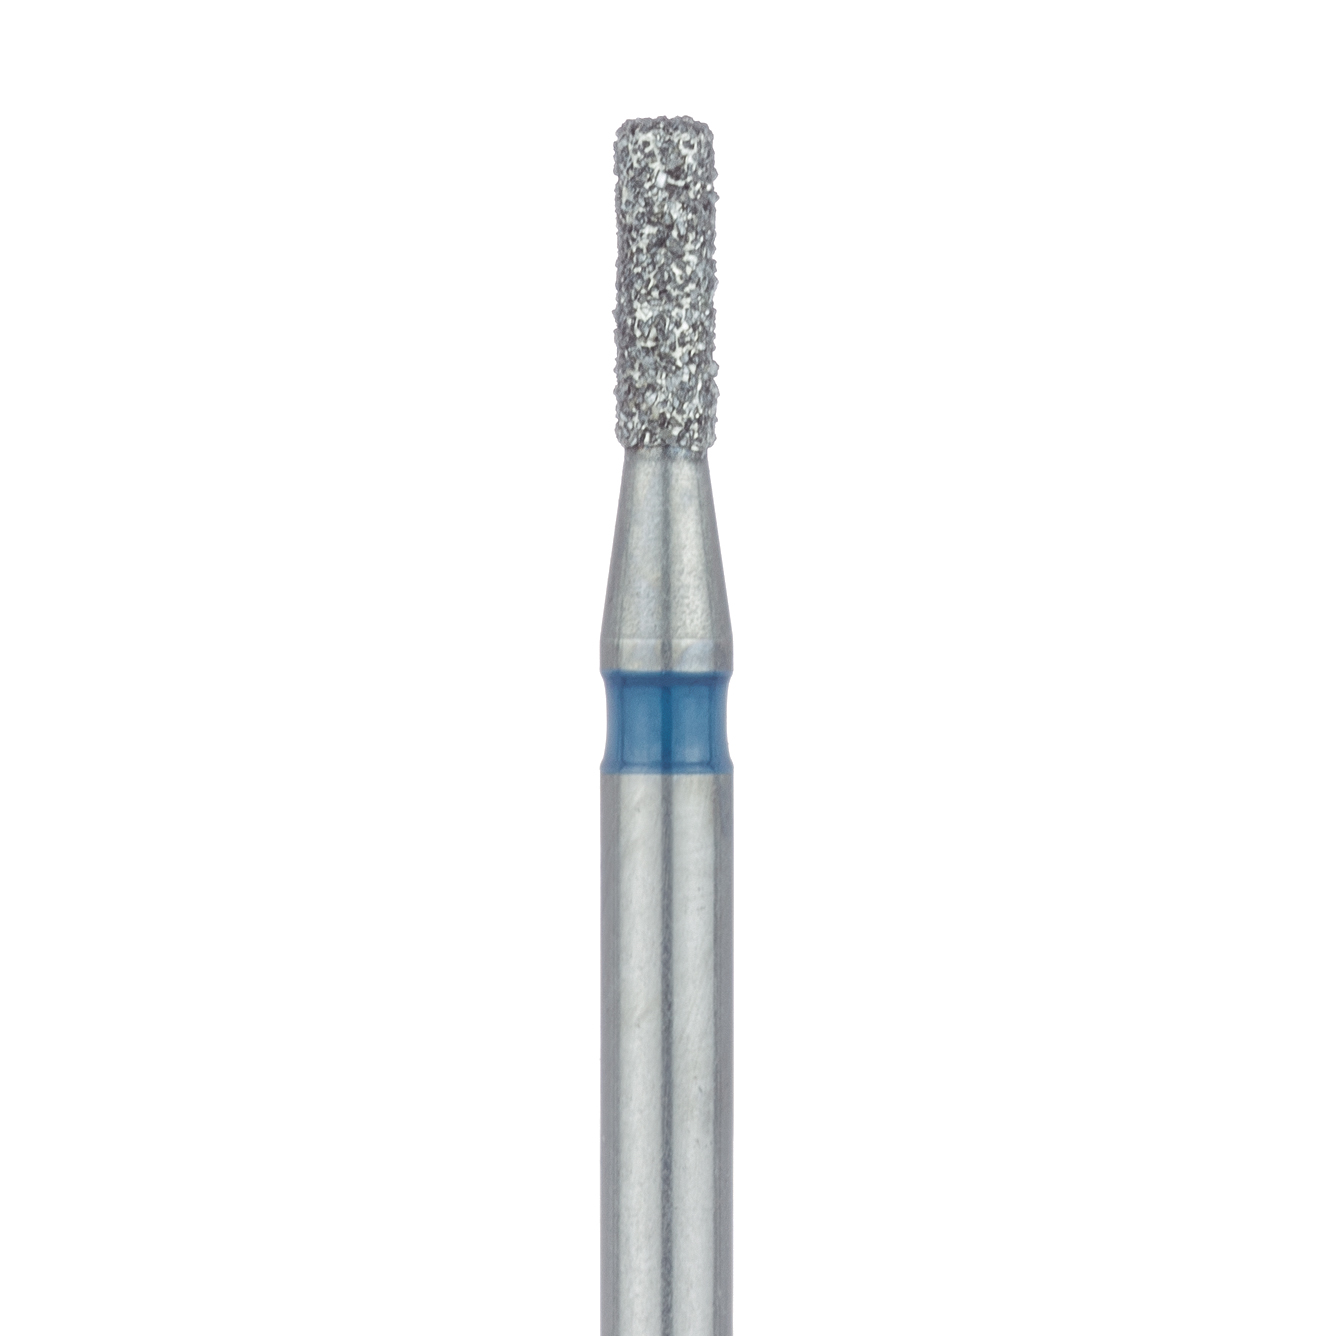 840-012-FG Round Edge Cylinder Diamond Bur, 1.2mm Ø, Medium, FG